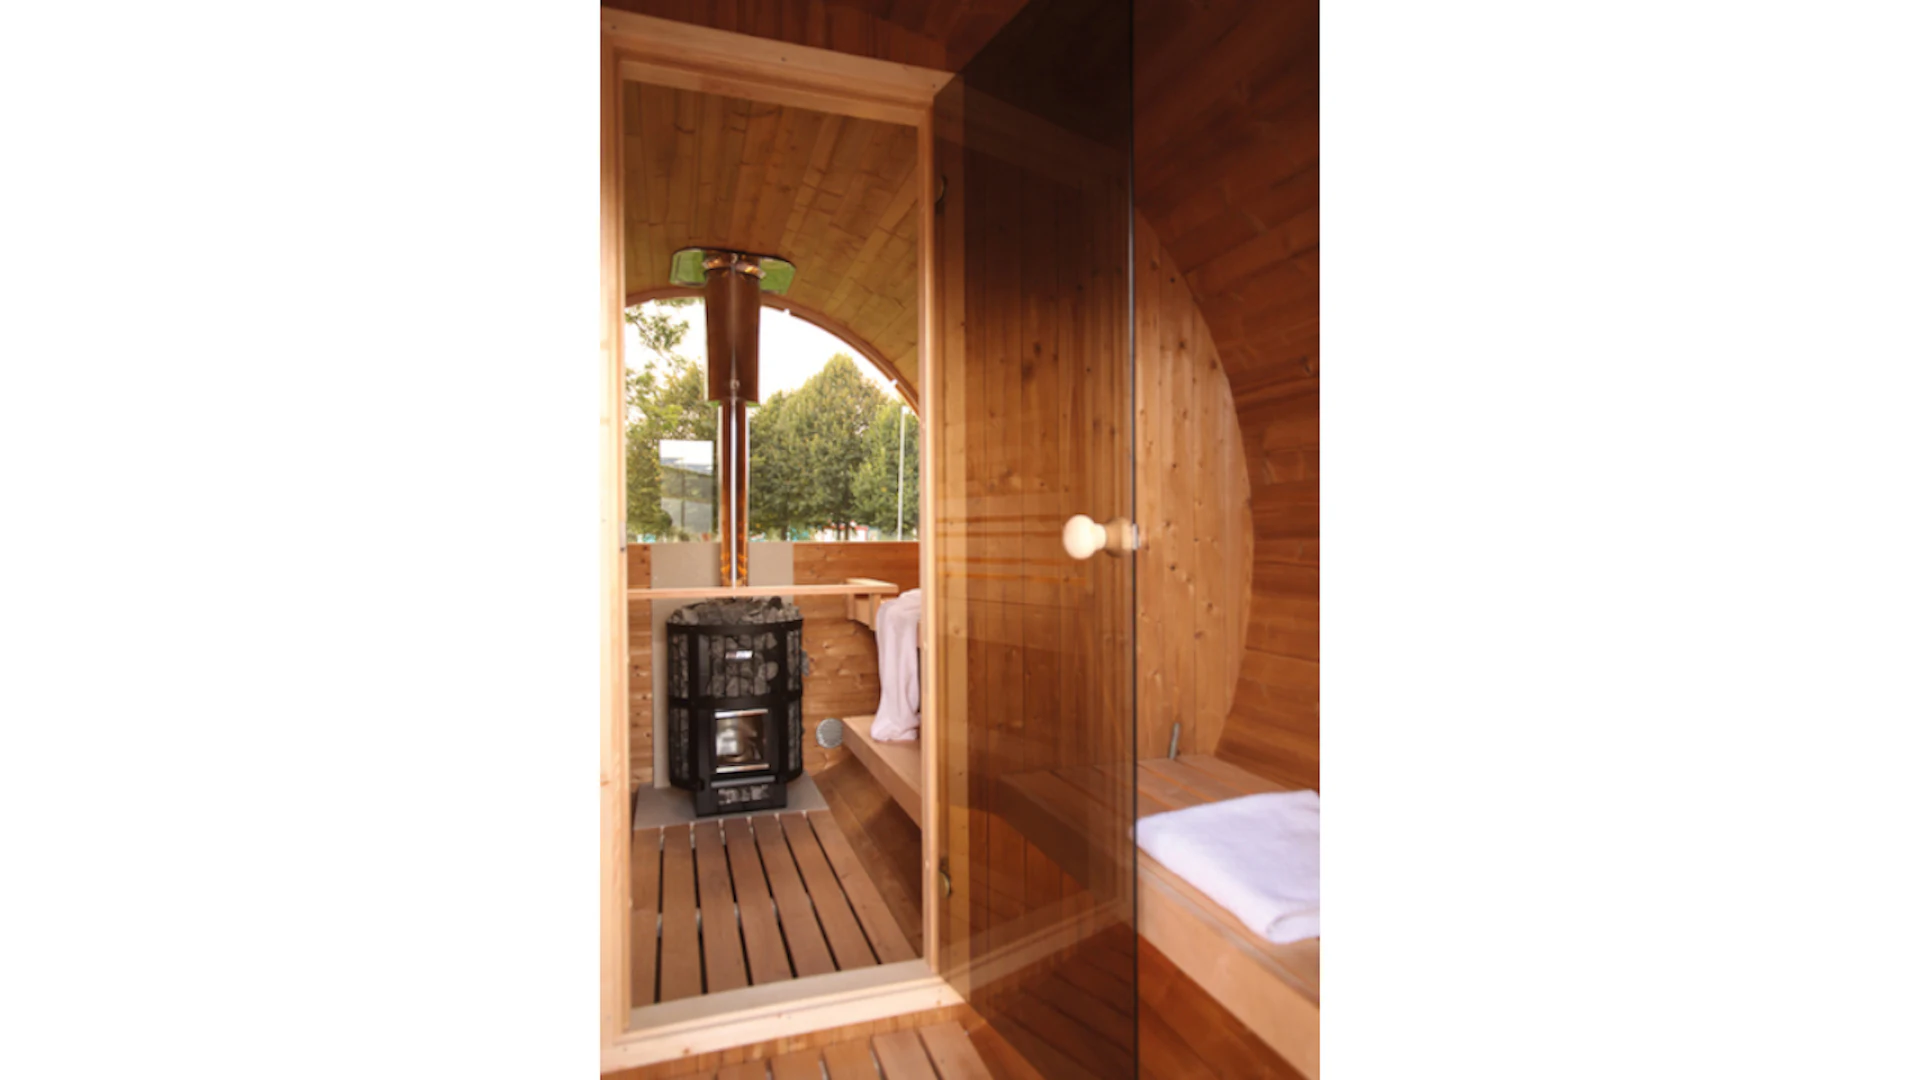 Verre semi-circulaire pour la paroi arrière du sauna barrel de luxe